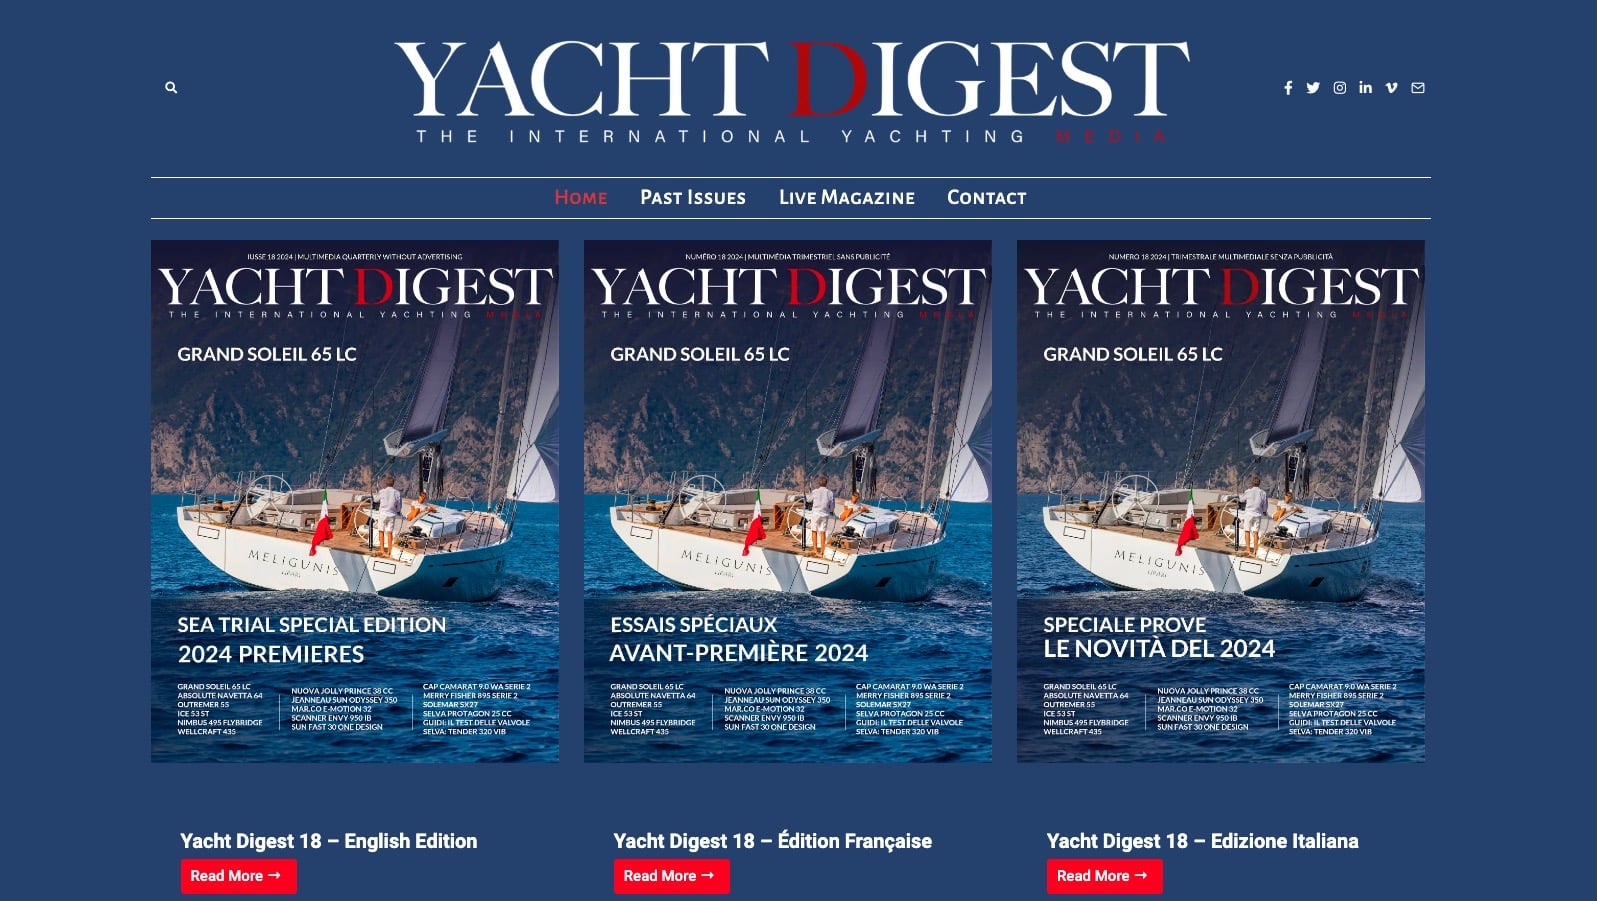 Yacht Digest 18 ist jetzt online, mit vielen sehenswerten Probefahrten